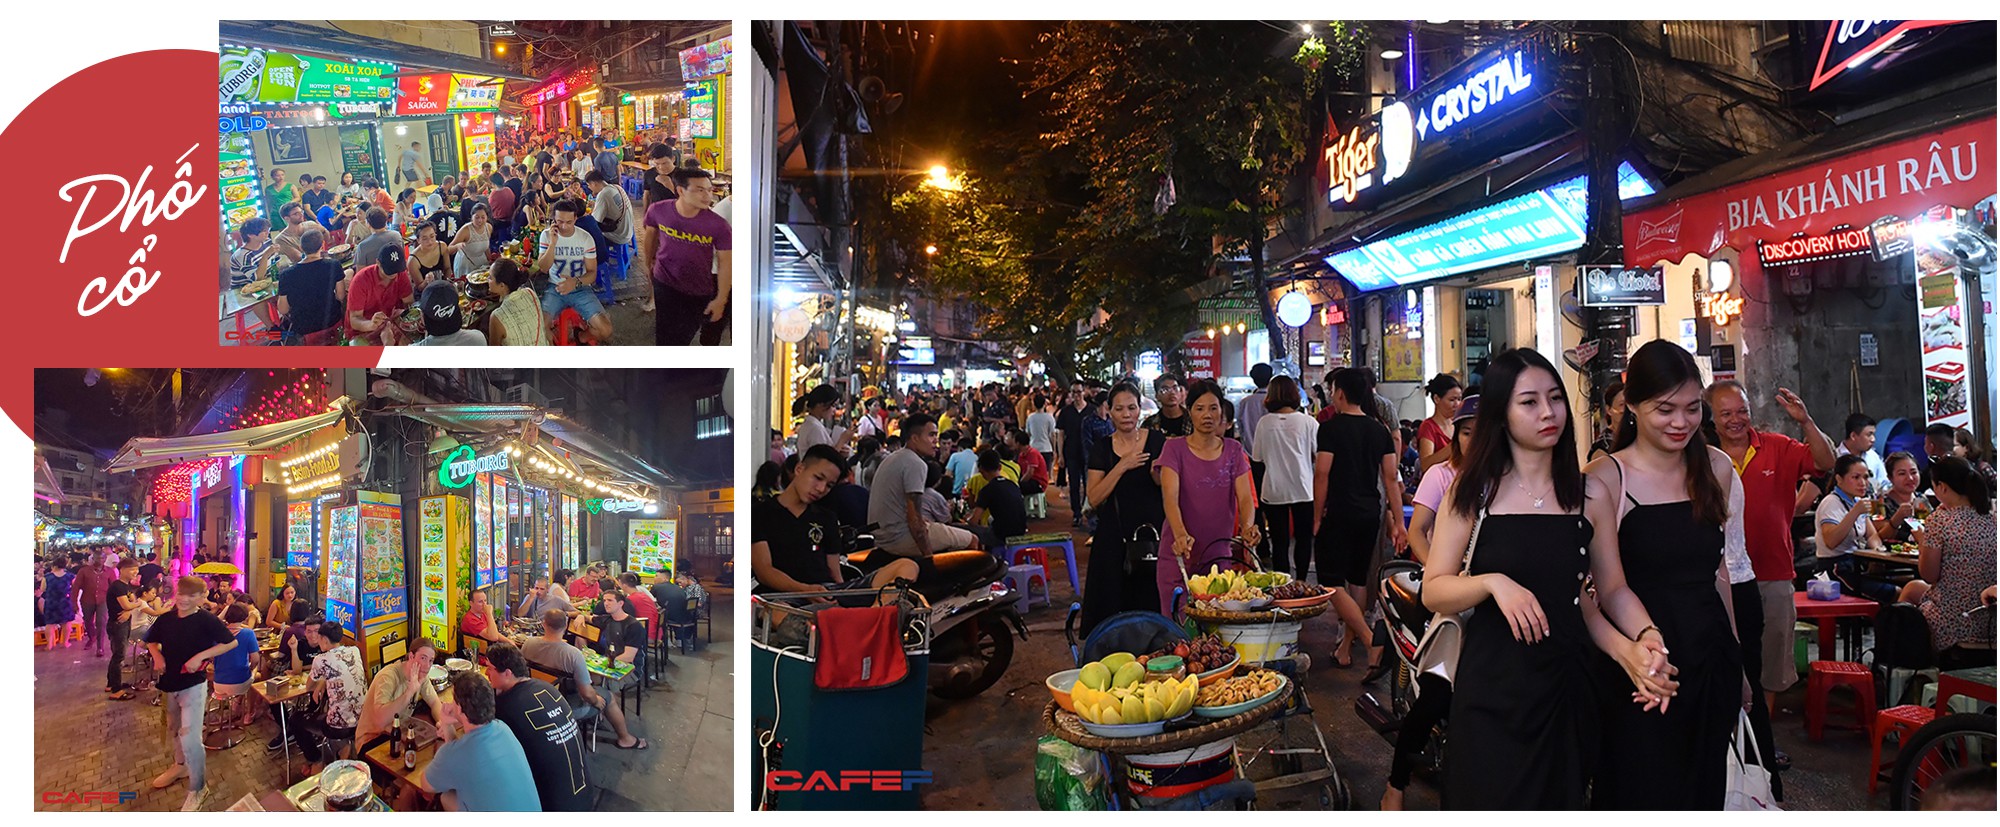 Kinh tế về đêm nhìn từ “chiến tranh bia” trên phố cổ Hà Nội - Ảnh 7.